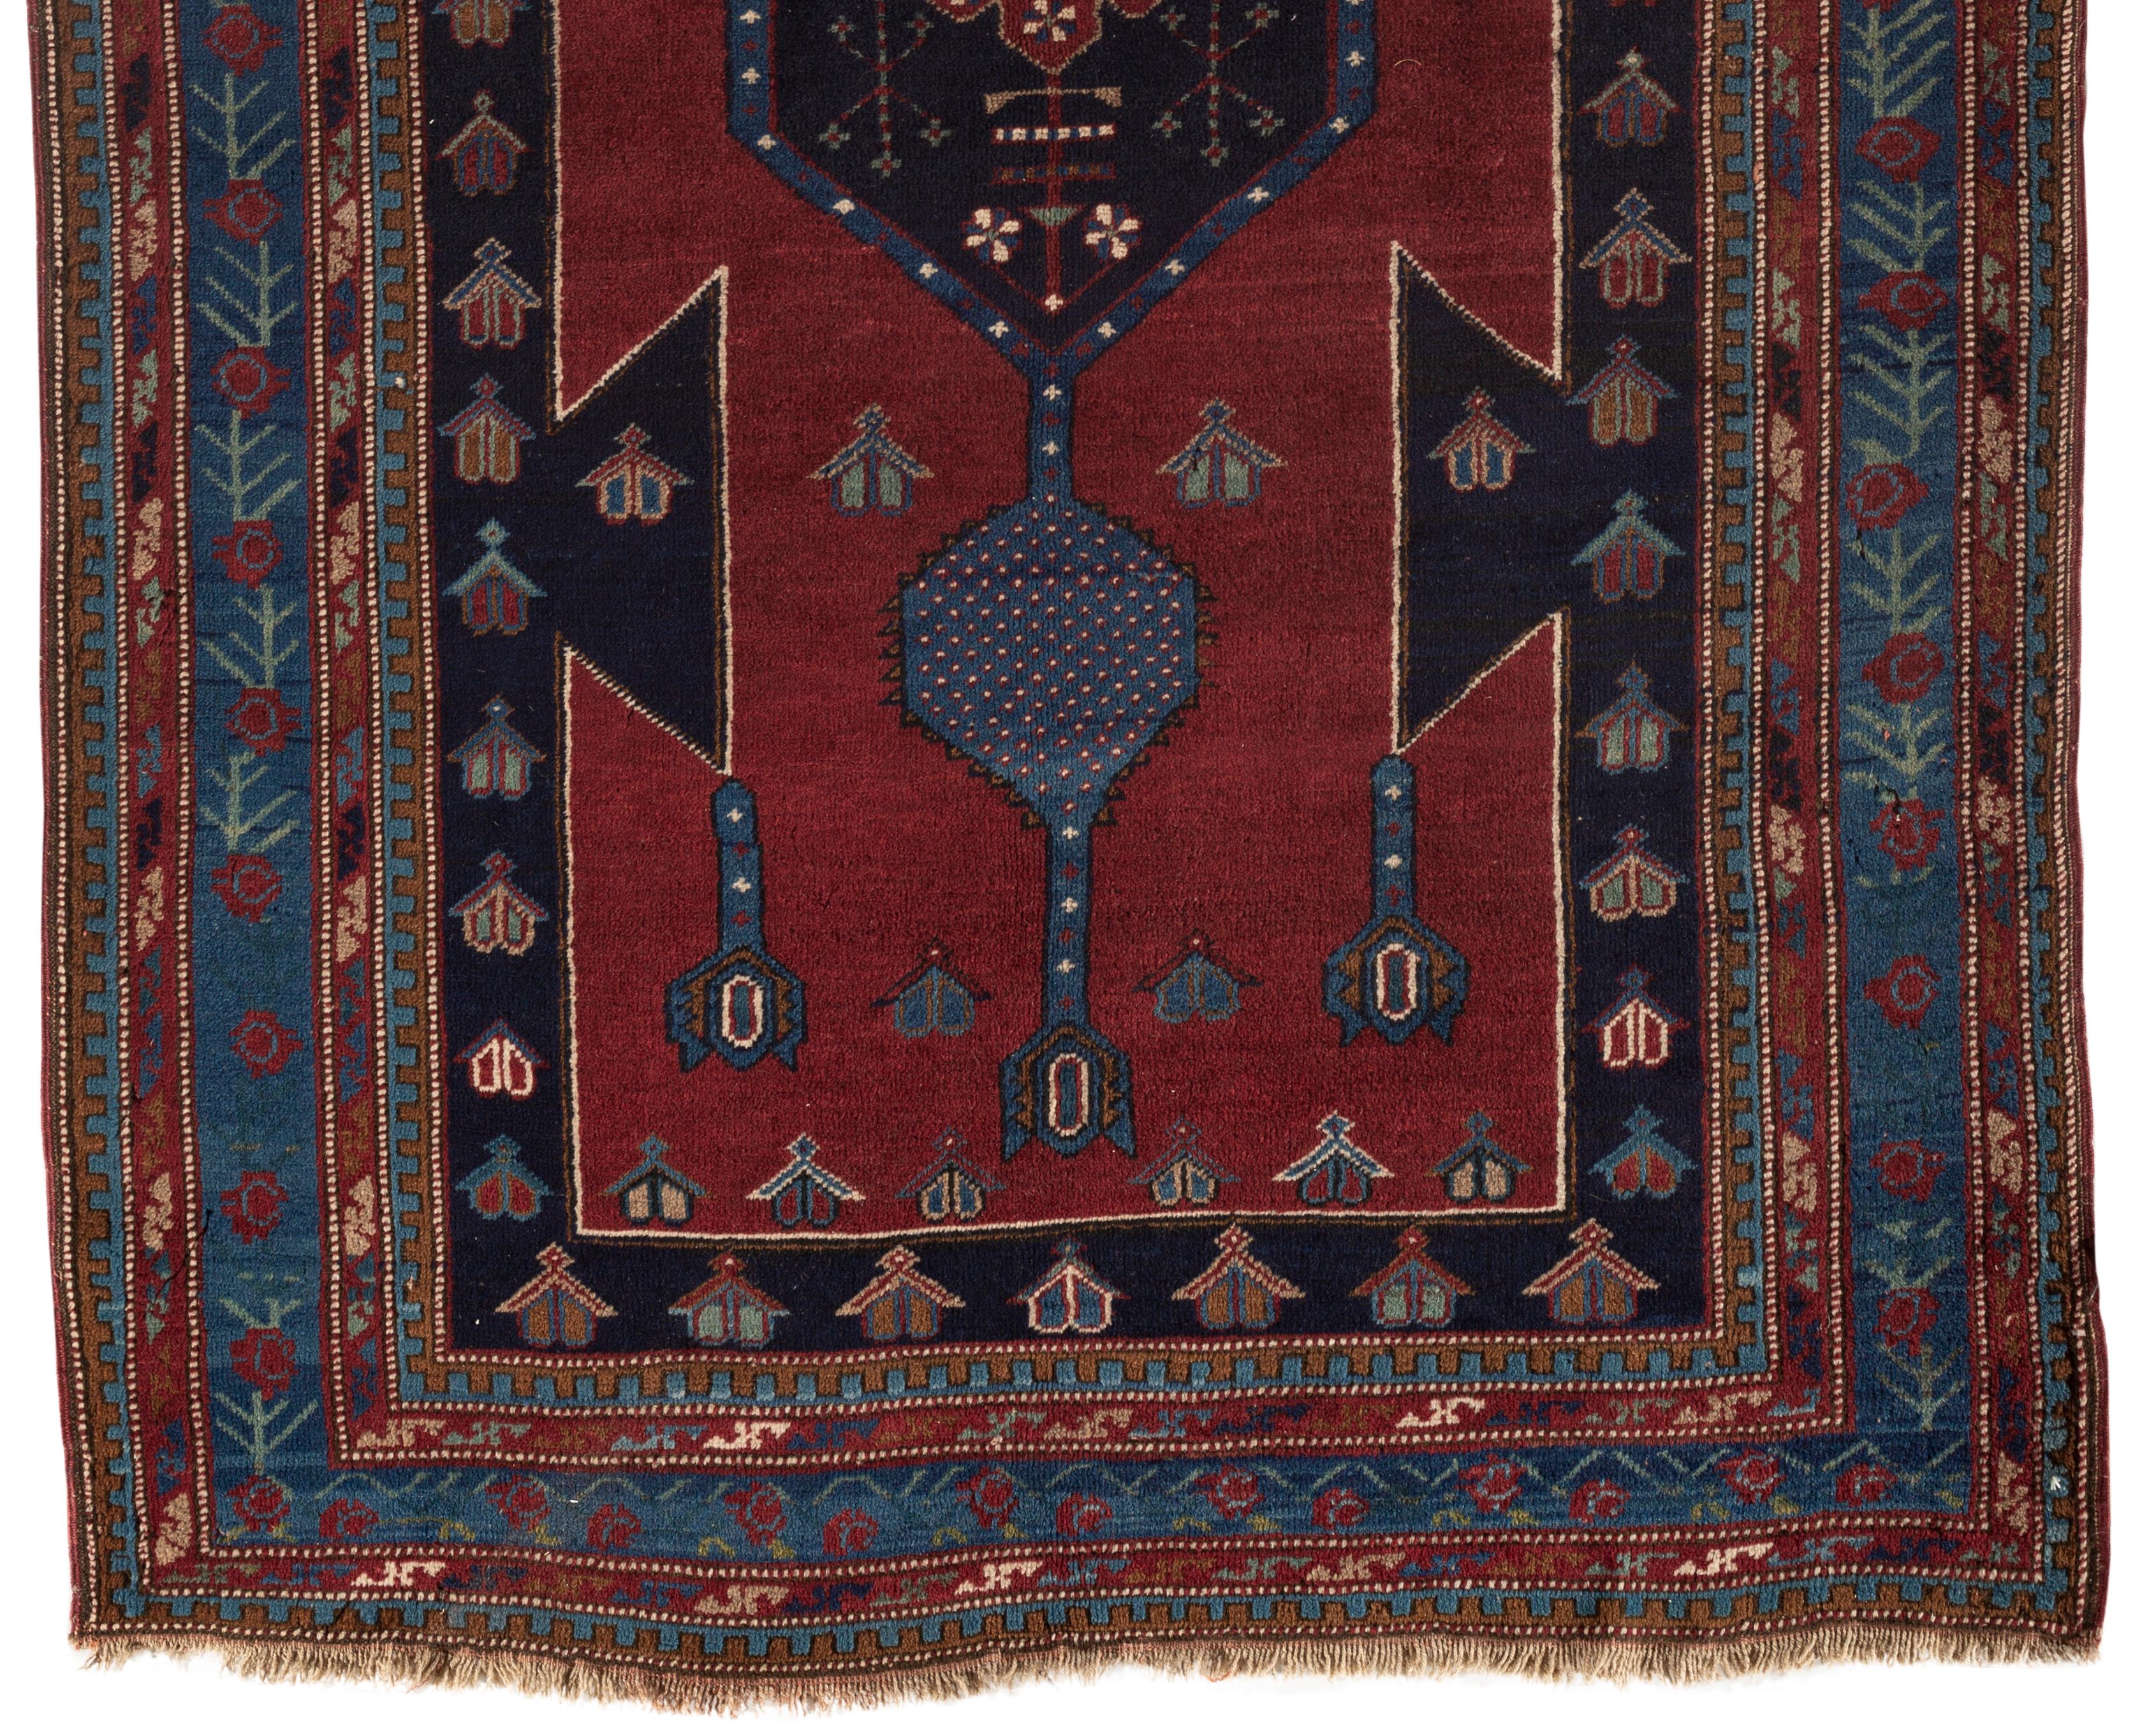 Antiker kaukasischer Kazak-Teppich, um 1900. Ein südwestkaukasischer kasachischer handgewebter Teppich um 1900. Die Detailgenauigkeit des Designs und die handwerkliche Kunstfertigkeit beim Weben haben ein wahres Kunstwerk geschaffen. Das